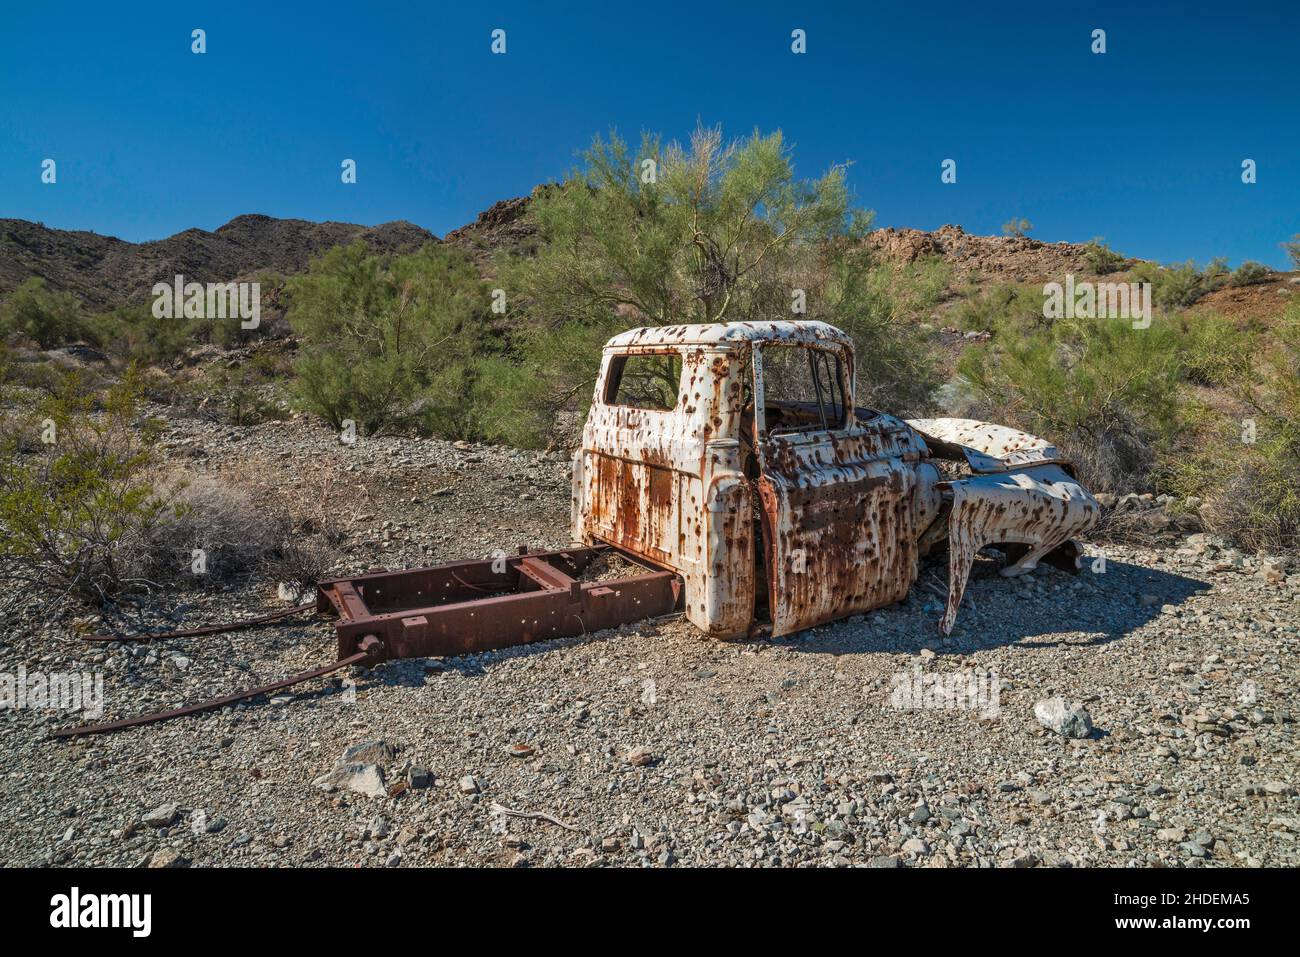 Une ancienne épave de pick-up, criblée de trous de balle, sur le site de la mine de cuivre de Swansea, dans les montagnes Buckskin, dans le désert de Sonoran, en Arizona, aux États-Unis Banque D'Images